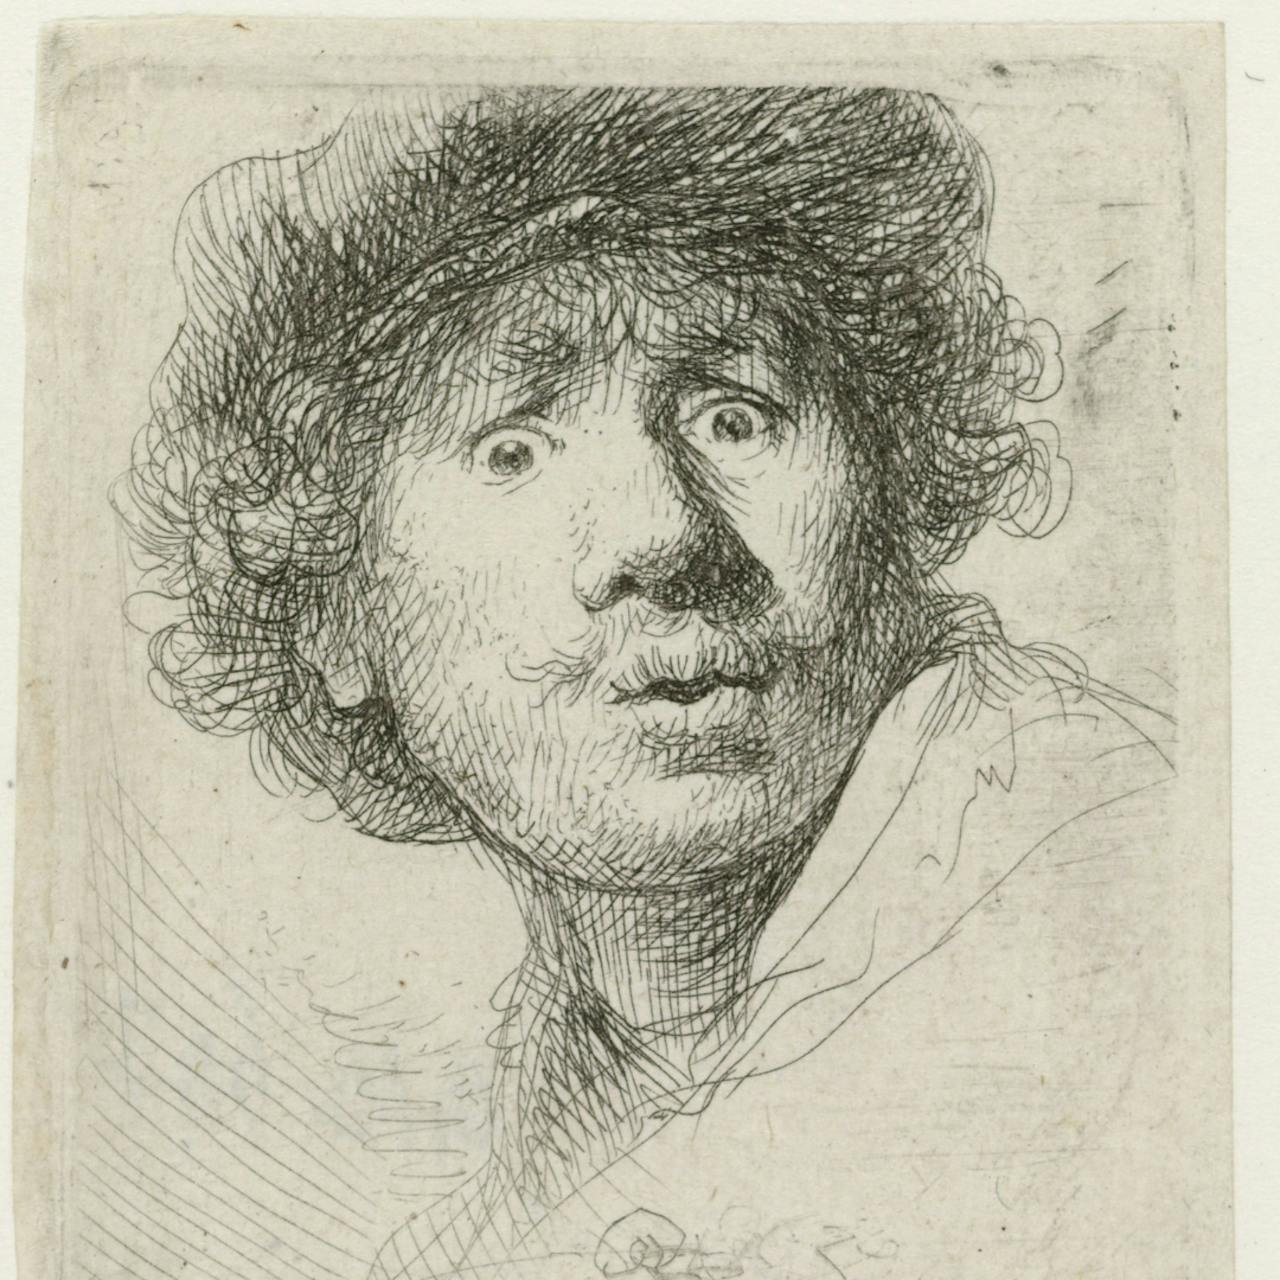 Rembrandt van Rijn, Zelfportret met baret, wijd open ogen en open mond, 1630, 
ets, 50×45 mm. Rijksmuseum Amsterdam: RP-P-OB-697